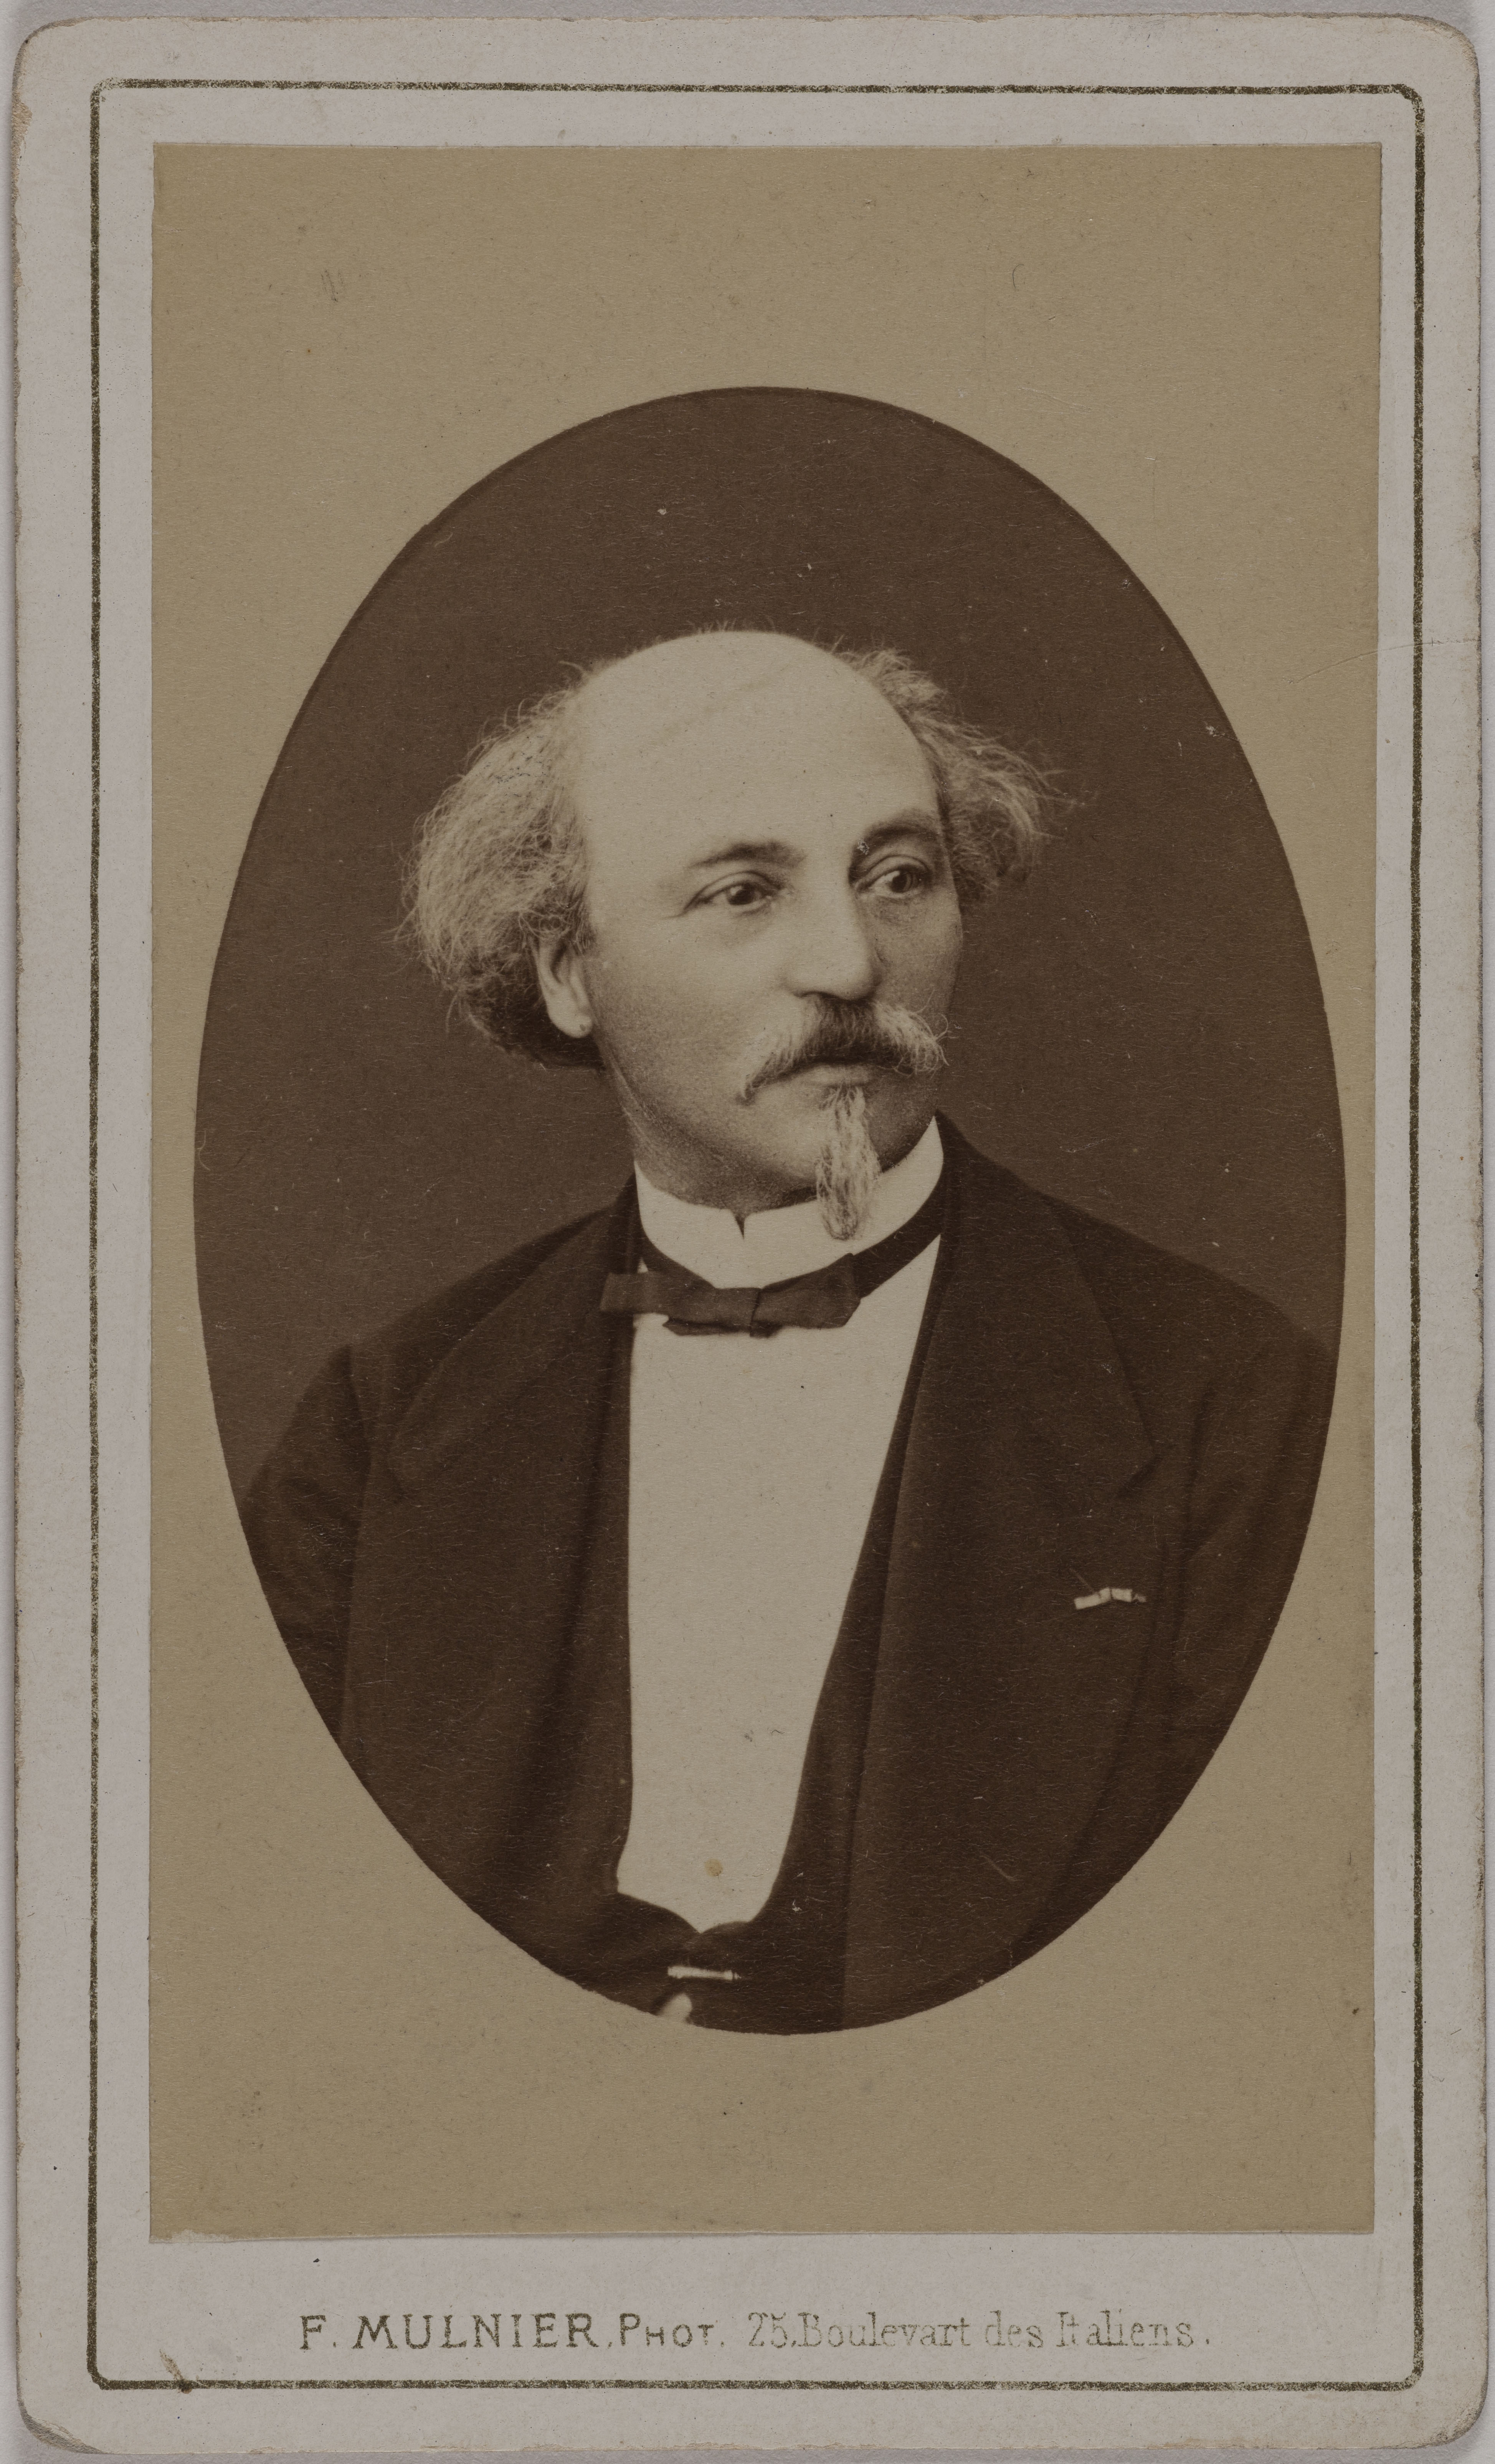 Ferdinand Mulnier, Portrait de Jean-Pierre-Alexandre Antigna (1817-1878), entre 1870 et 1890, musée Carnavalet, PH46407. Domaine public. Photo : CC0 Paris Musées / Musée Carnavalet.